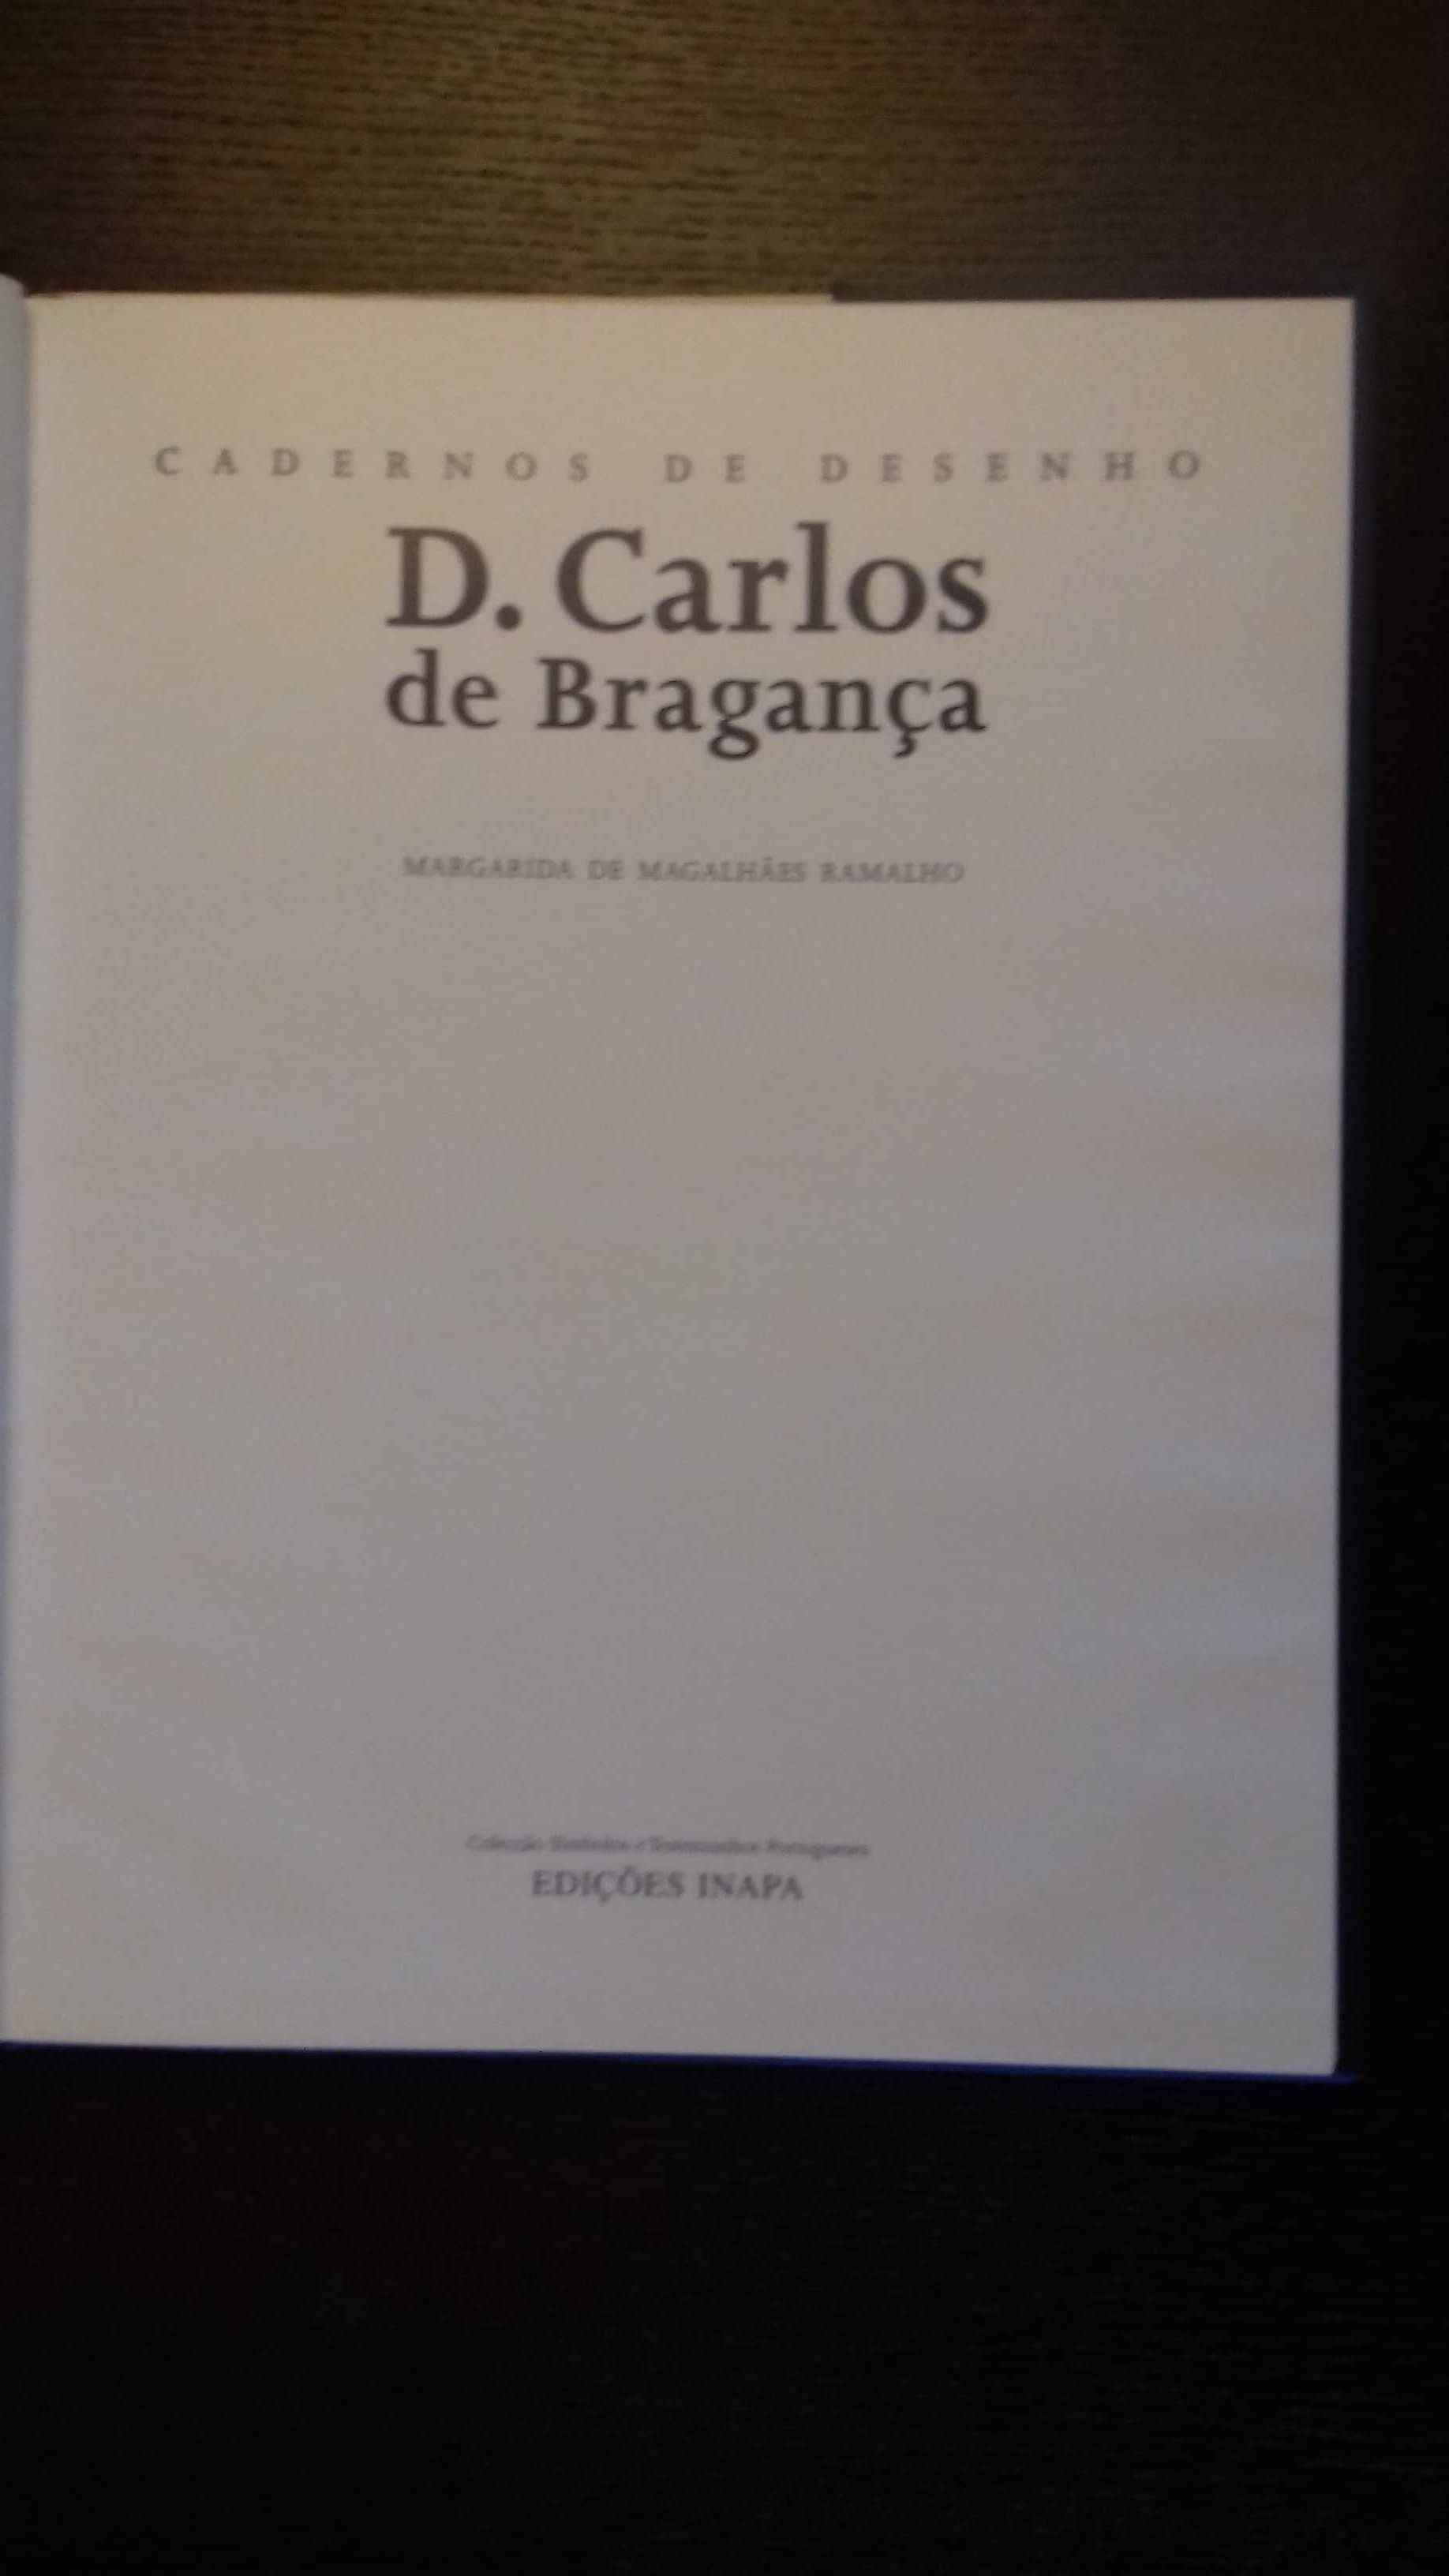 Cadernos de desenho D. Carlos de Bragança